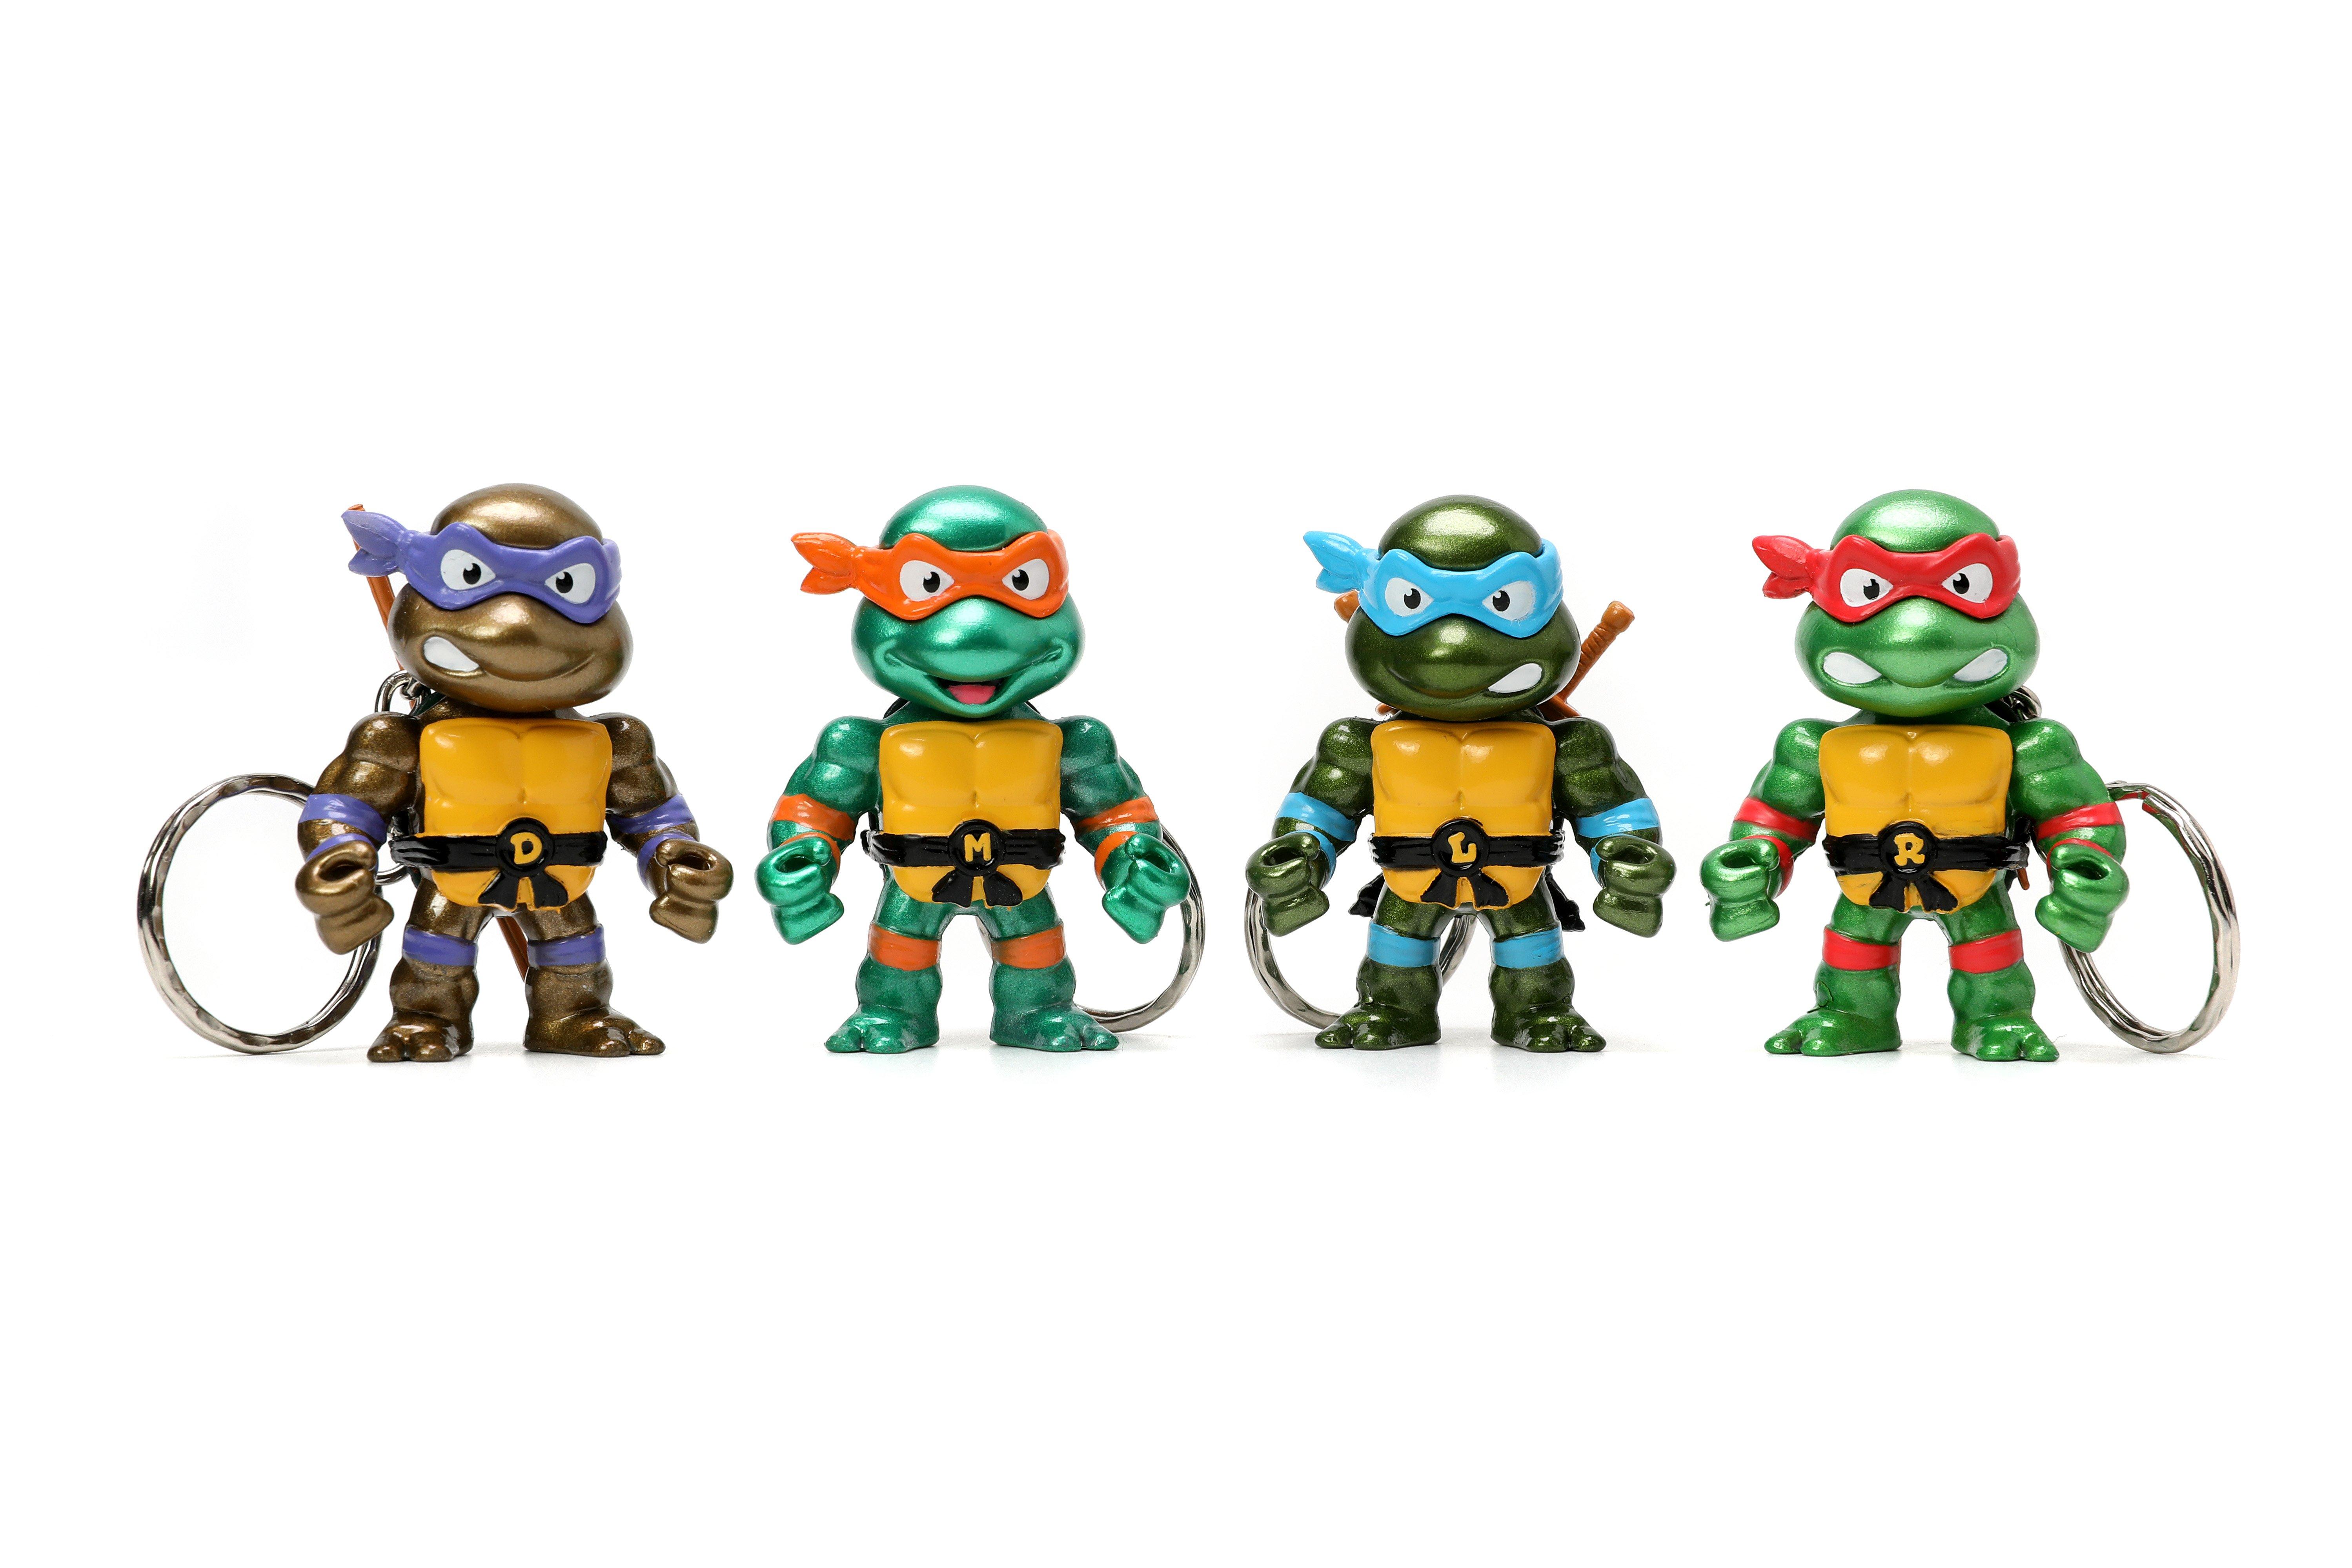 https://media.gamestop.com/i/gamestop/11186648/Jada-Toys-Teenage-Mutant-Ninja-Turtles-2.5-in-Metalfigs-Keychain-4-Pack-GameStop-Exclusive?$pdp$